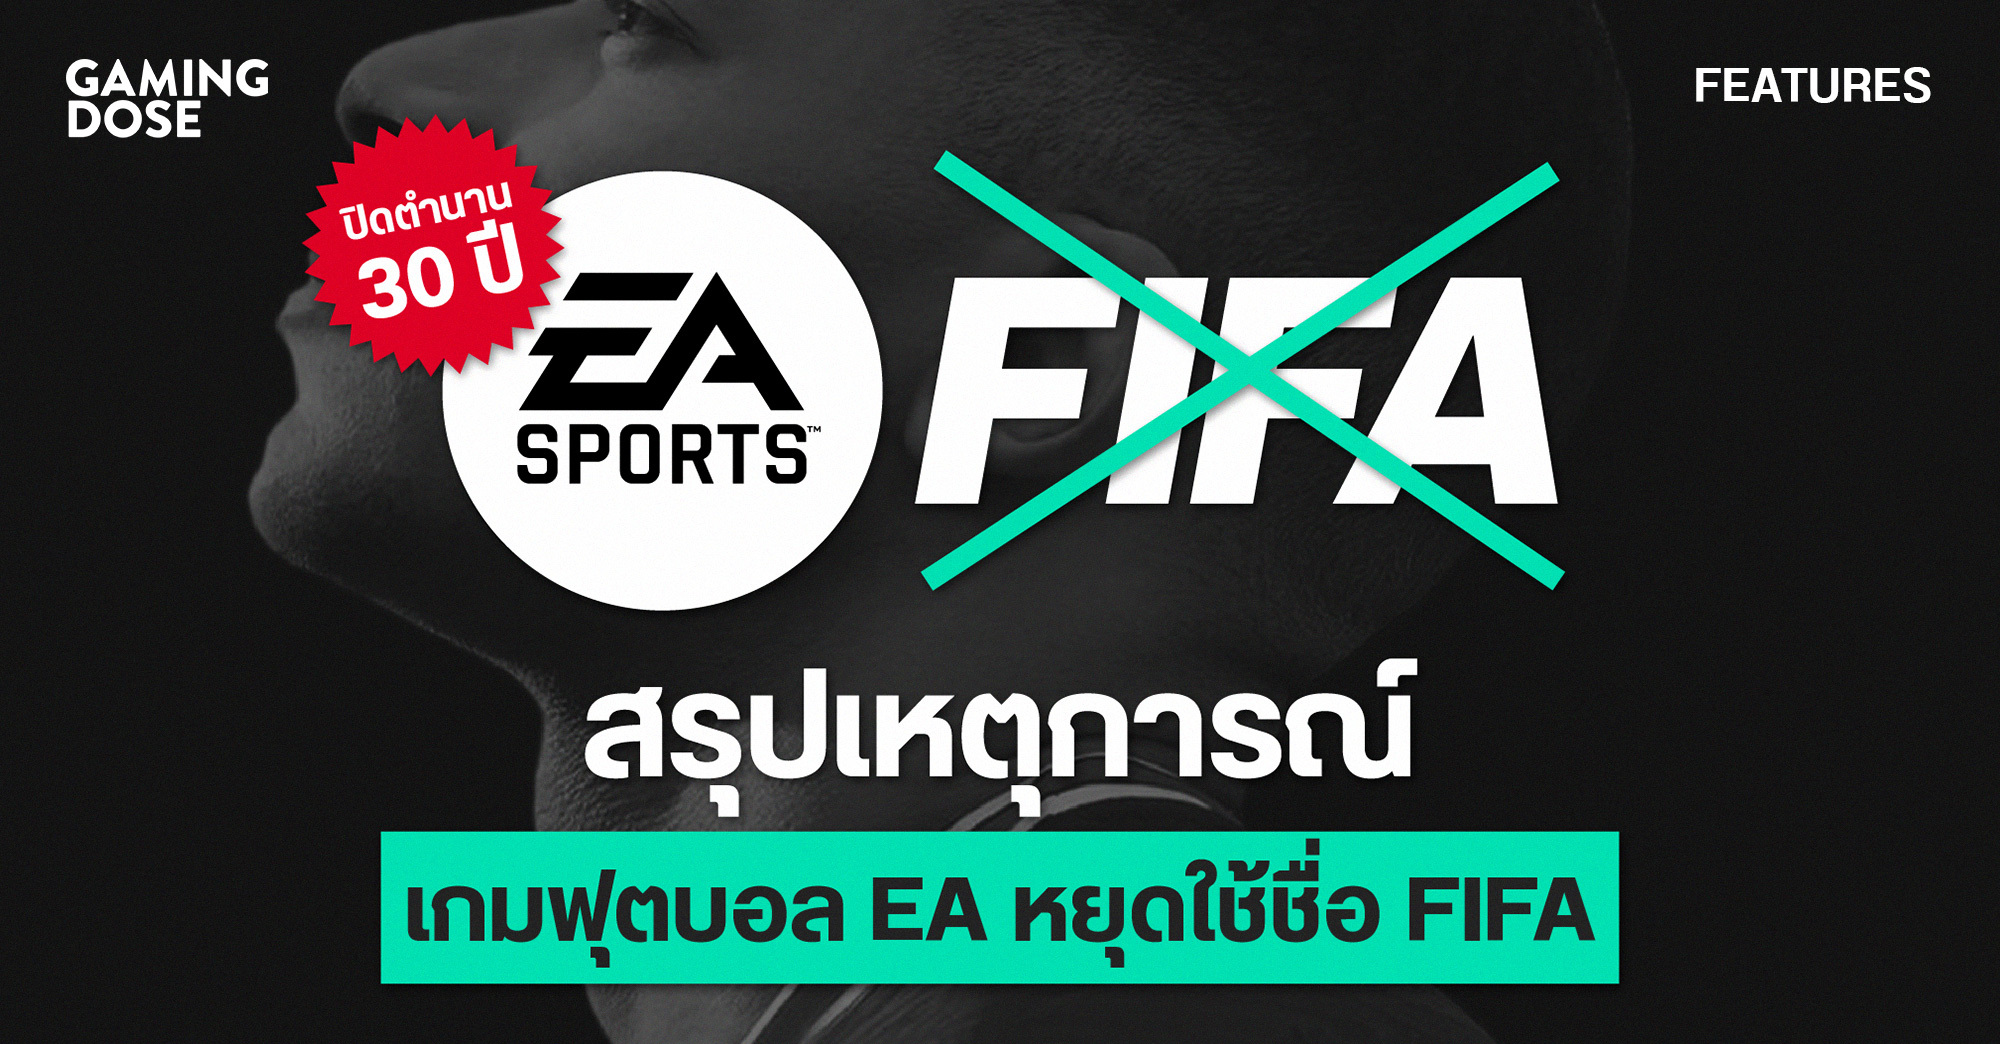 ปิดตำนาน 30 ปี สรุปเหตุการณ์เกมฟุตบอล EA หยุดใช้ชื่อ FIFA